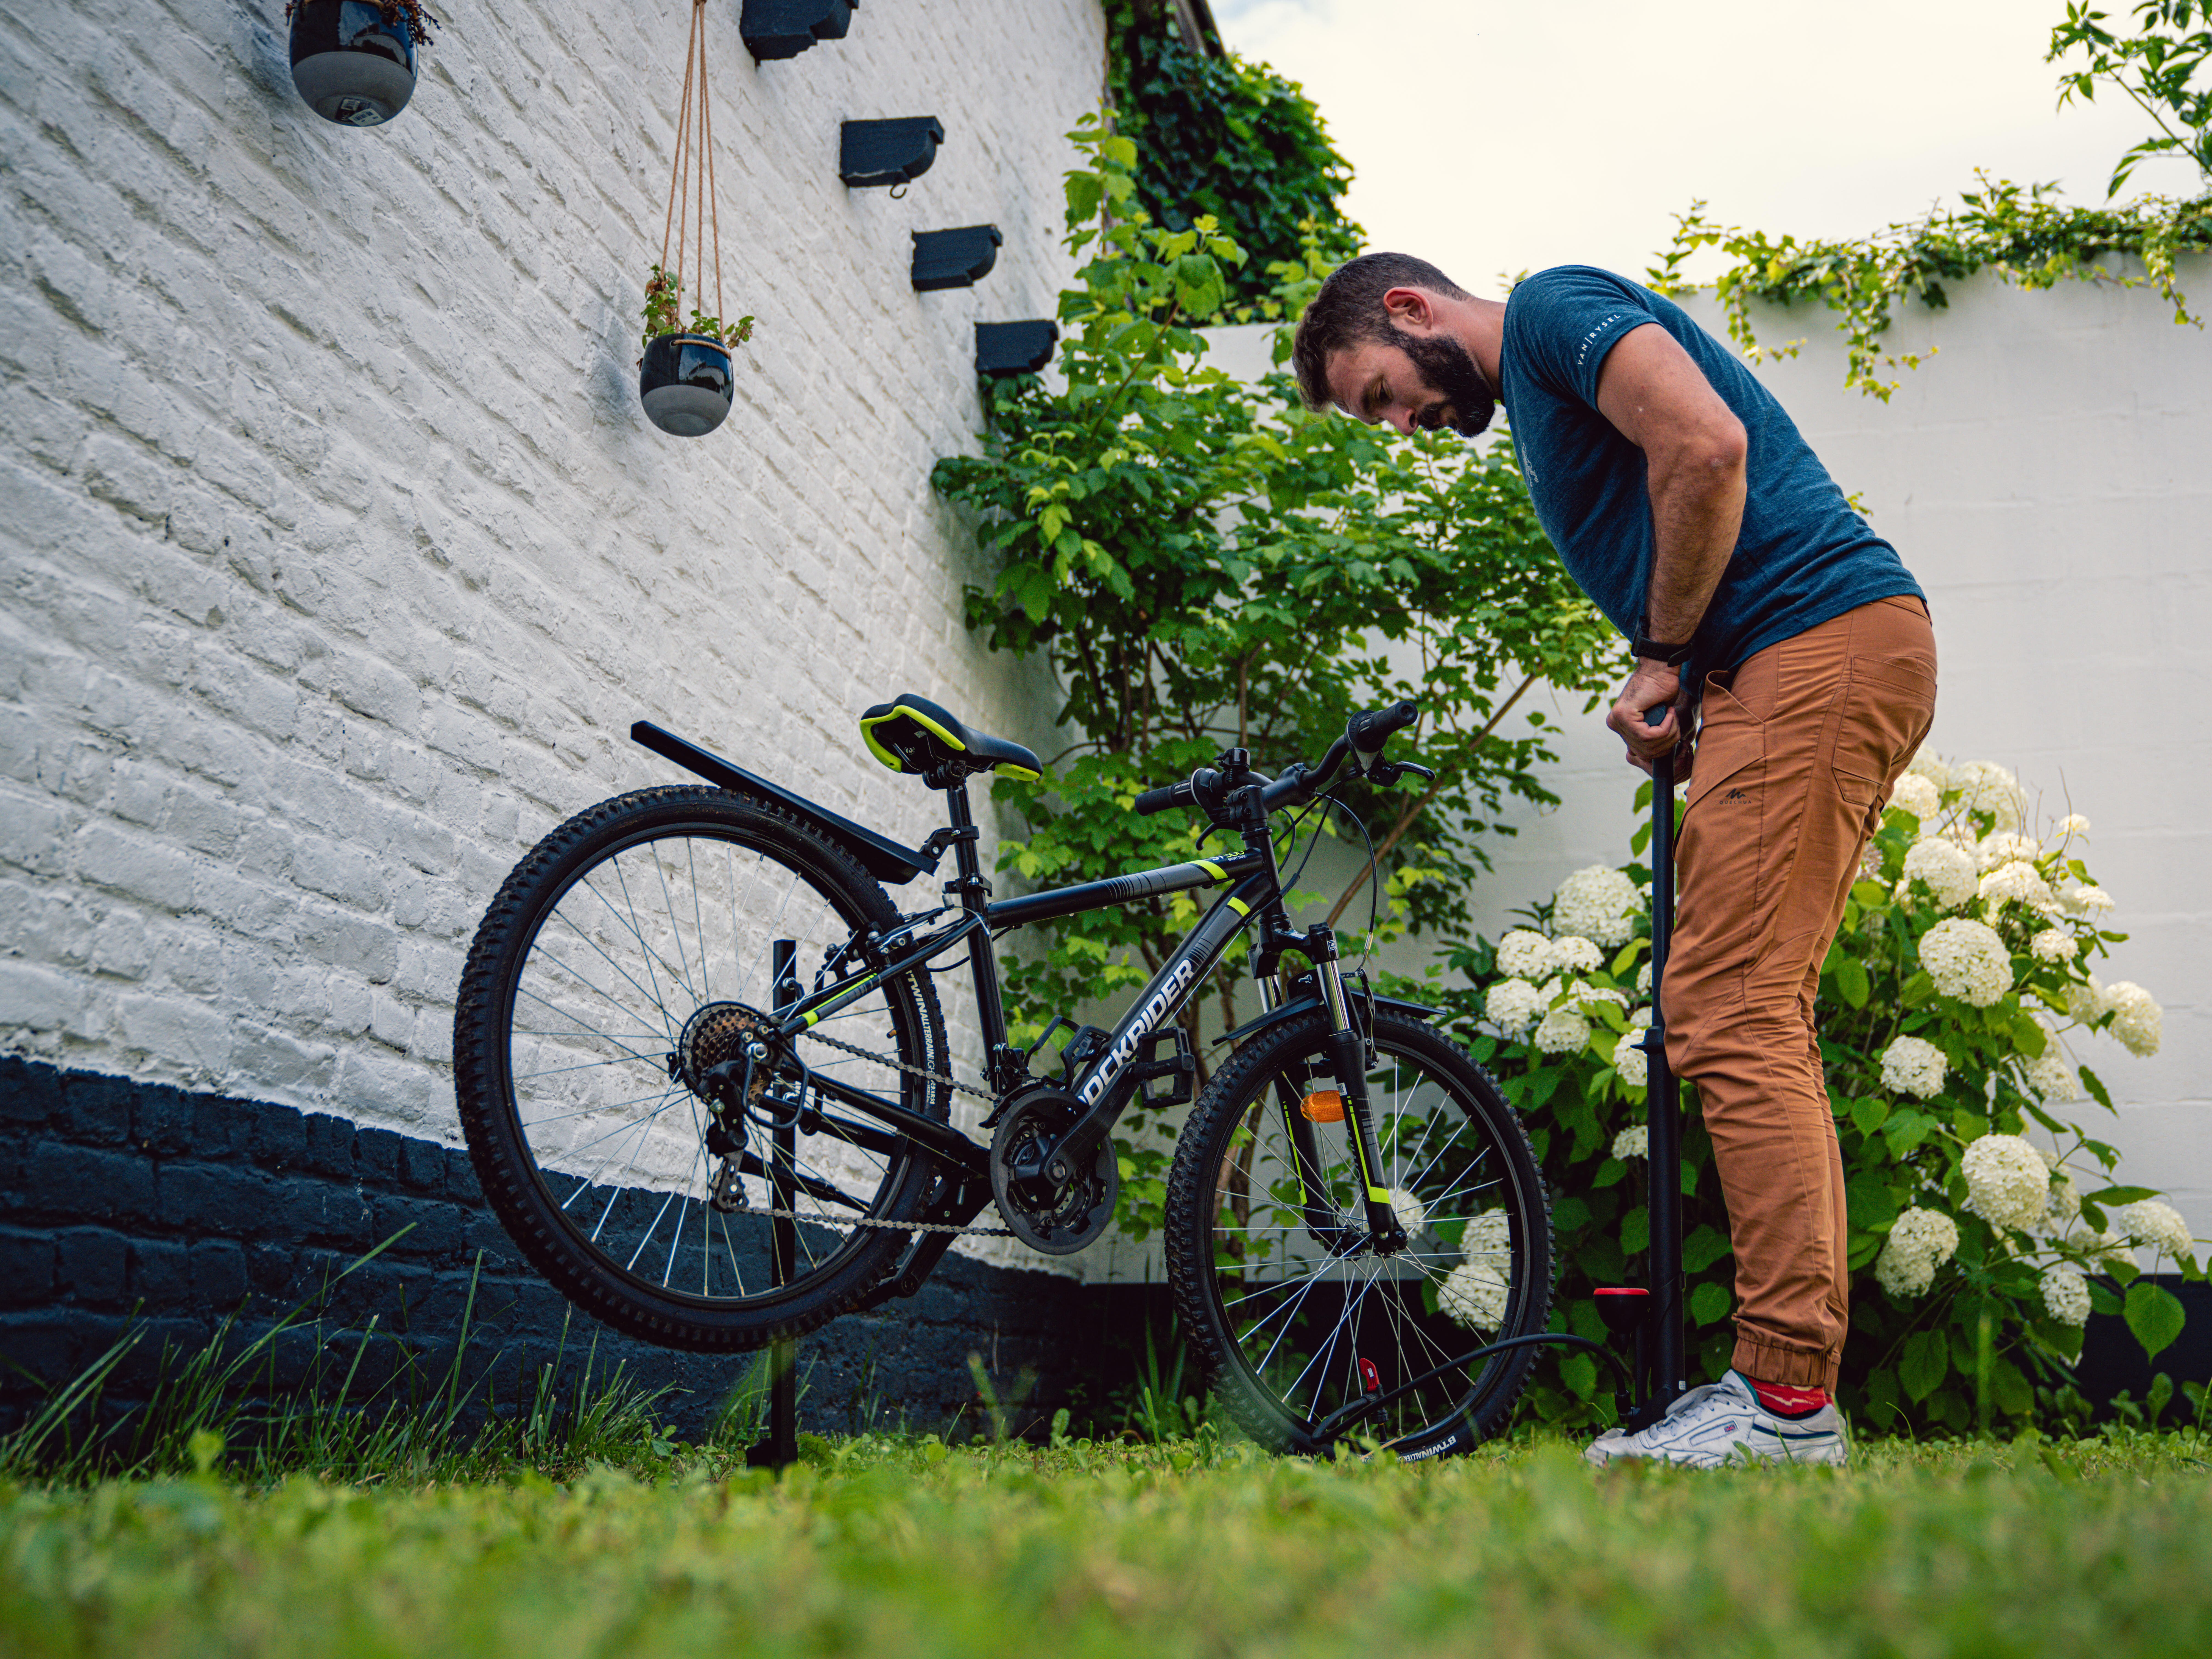 Quelles sont les meilleures pompes pour gonfler rapidement un pneu vélo  route ?